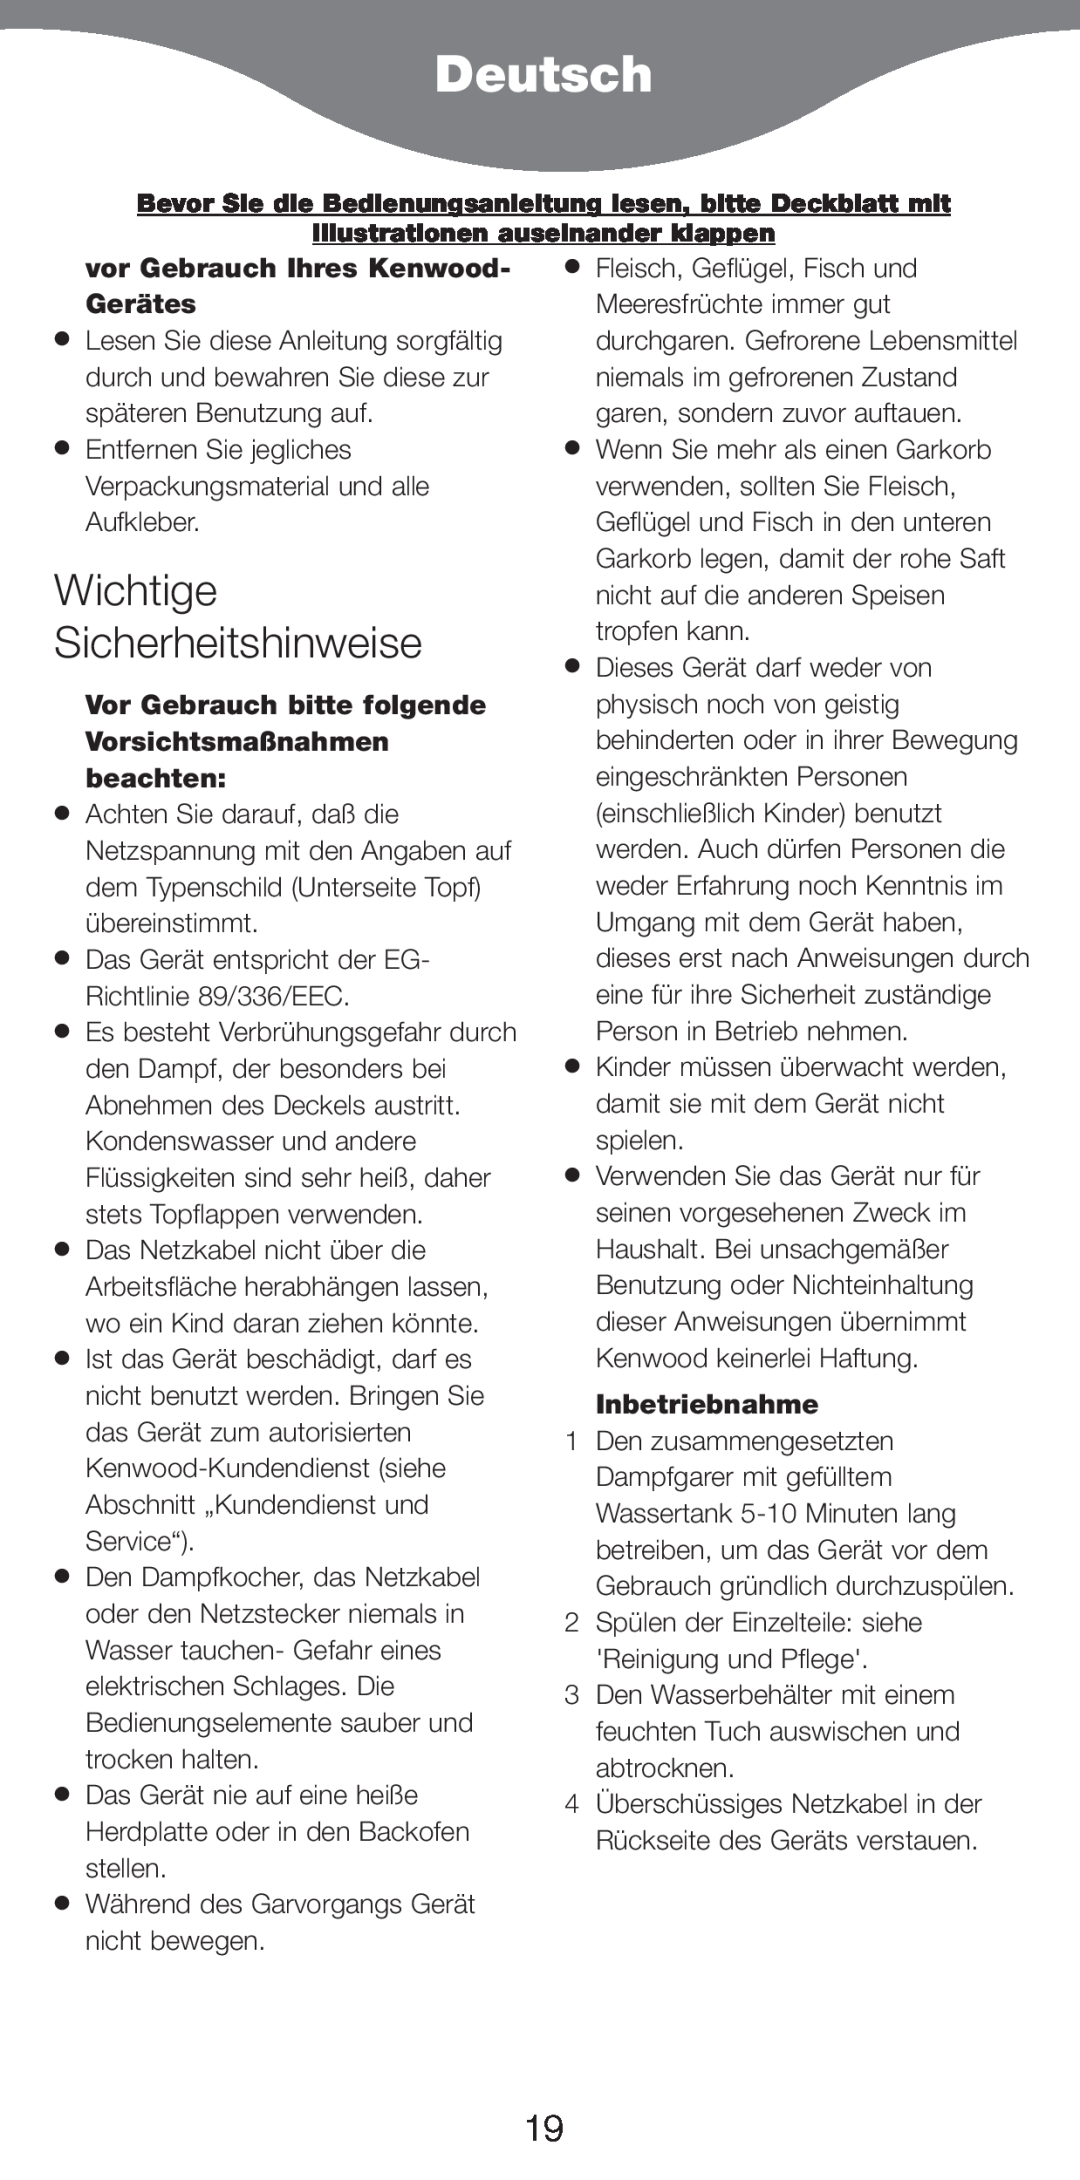 Kenwood FS370 manual Deutsch, Wichtige Sicherheitshinweise, vor Gebrauch Ihres Kenwood- GerŠtes, Inbetriebnahme 